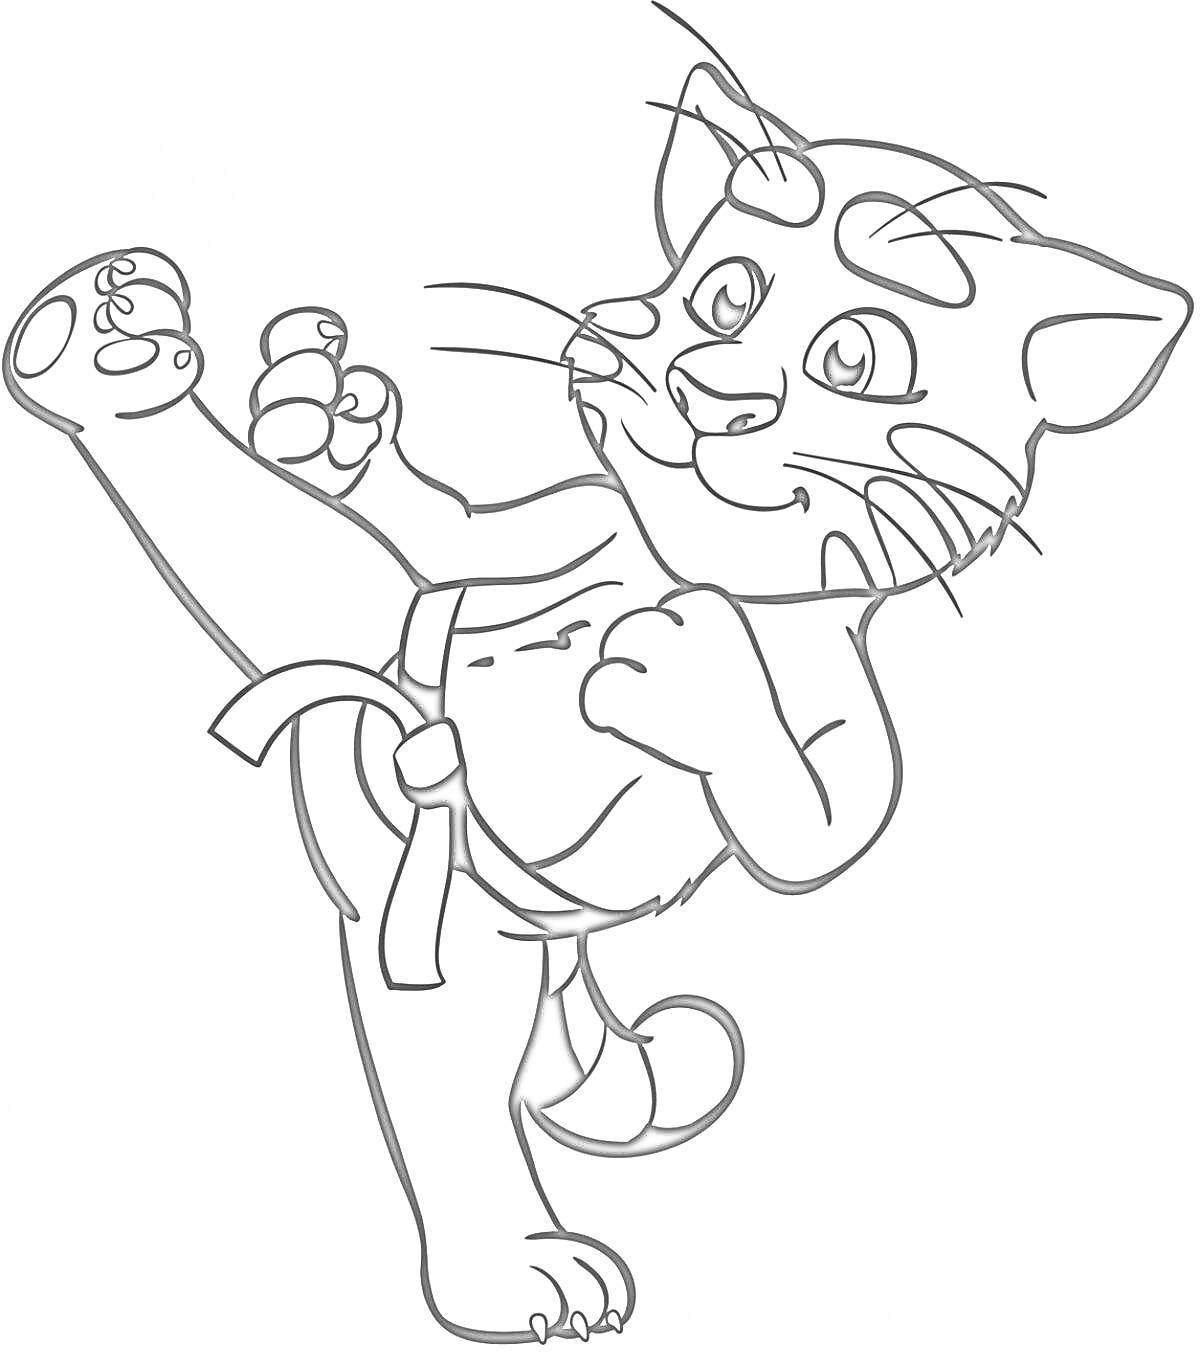 Раскраска Кот Том в боевой стойке с поднятой ногой